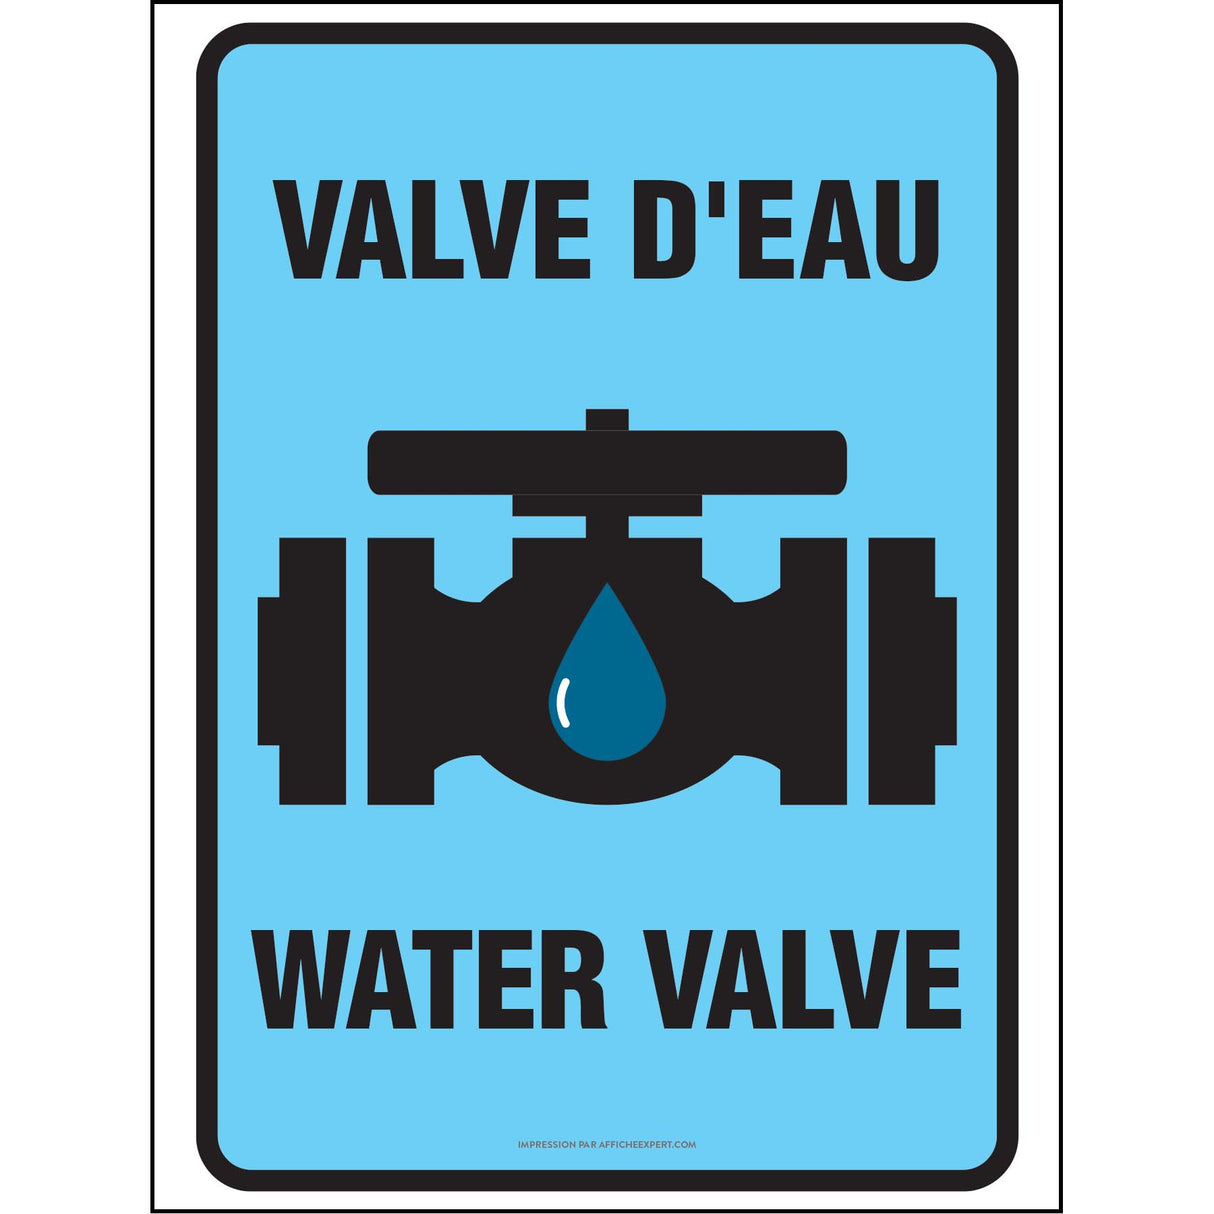 Valve d'eau / Water Valve